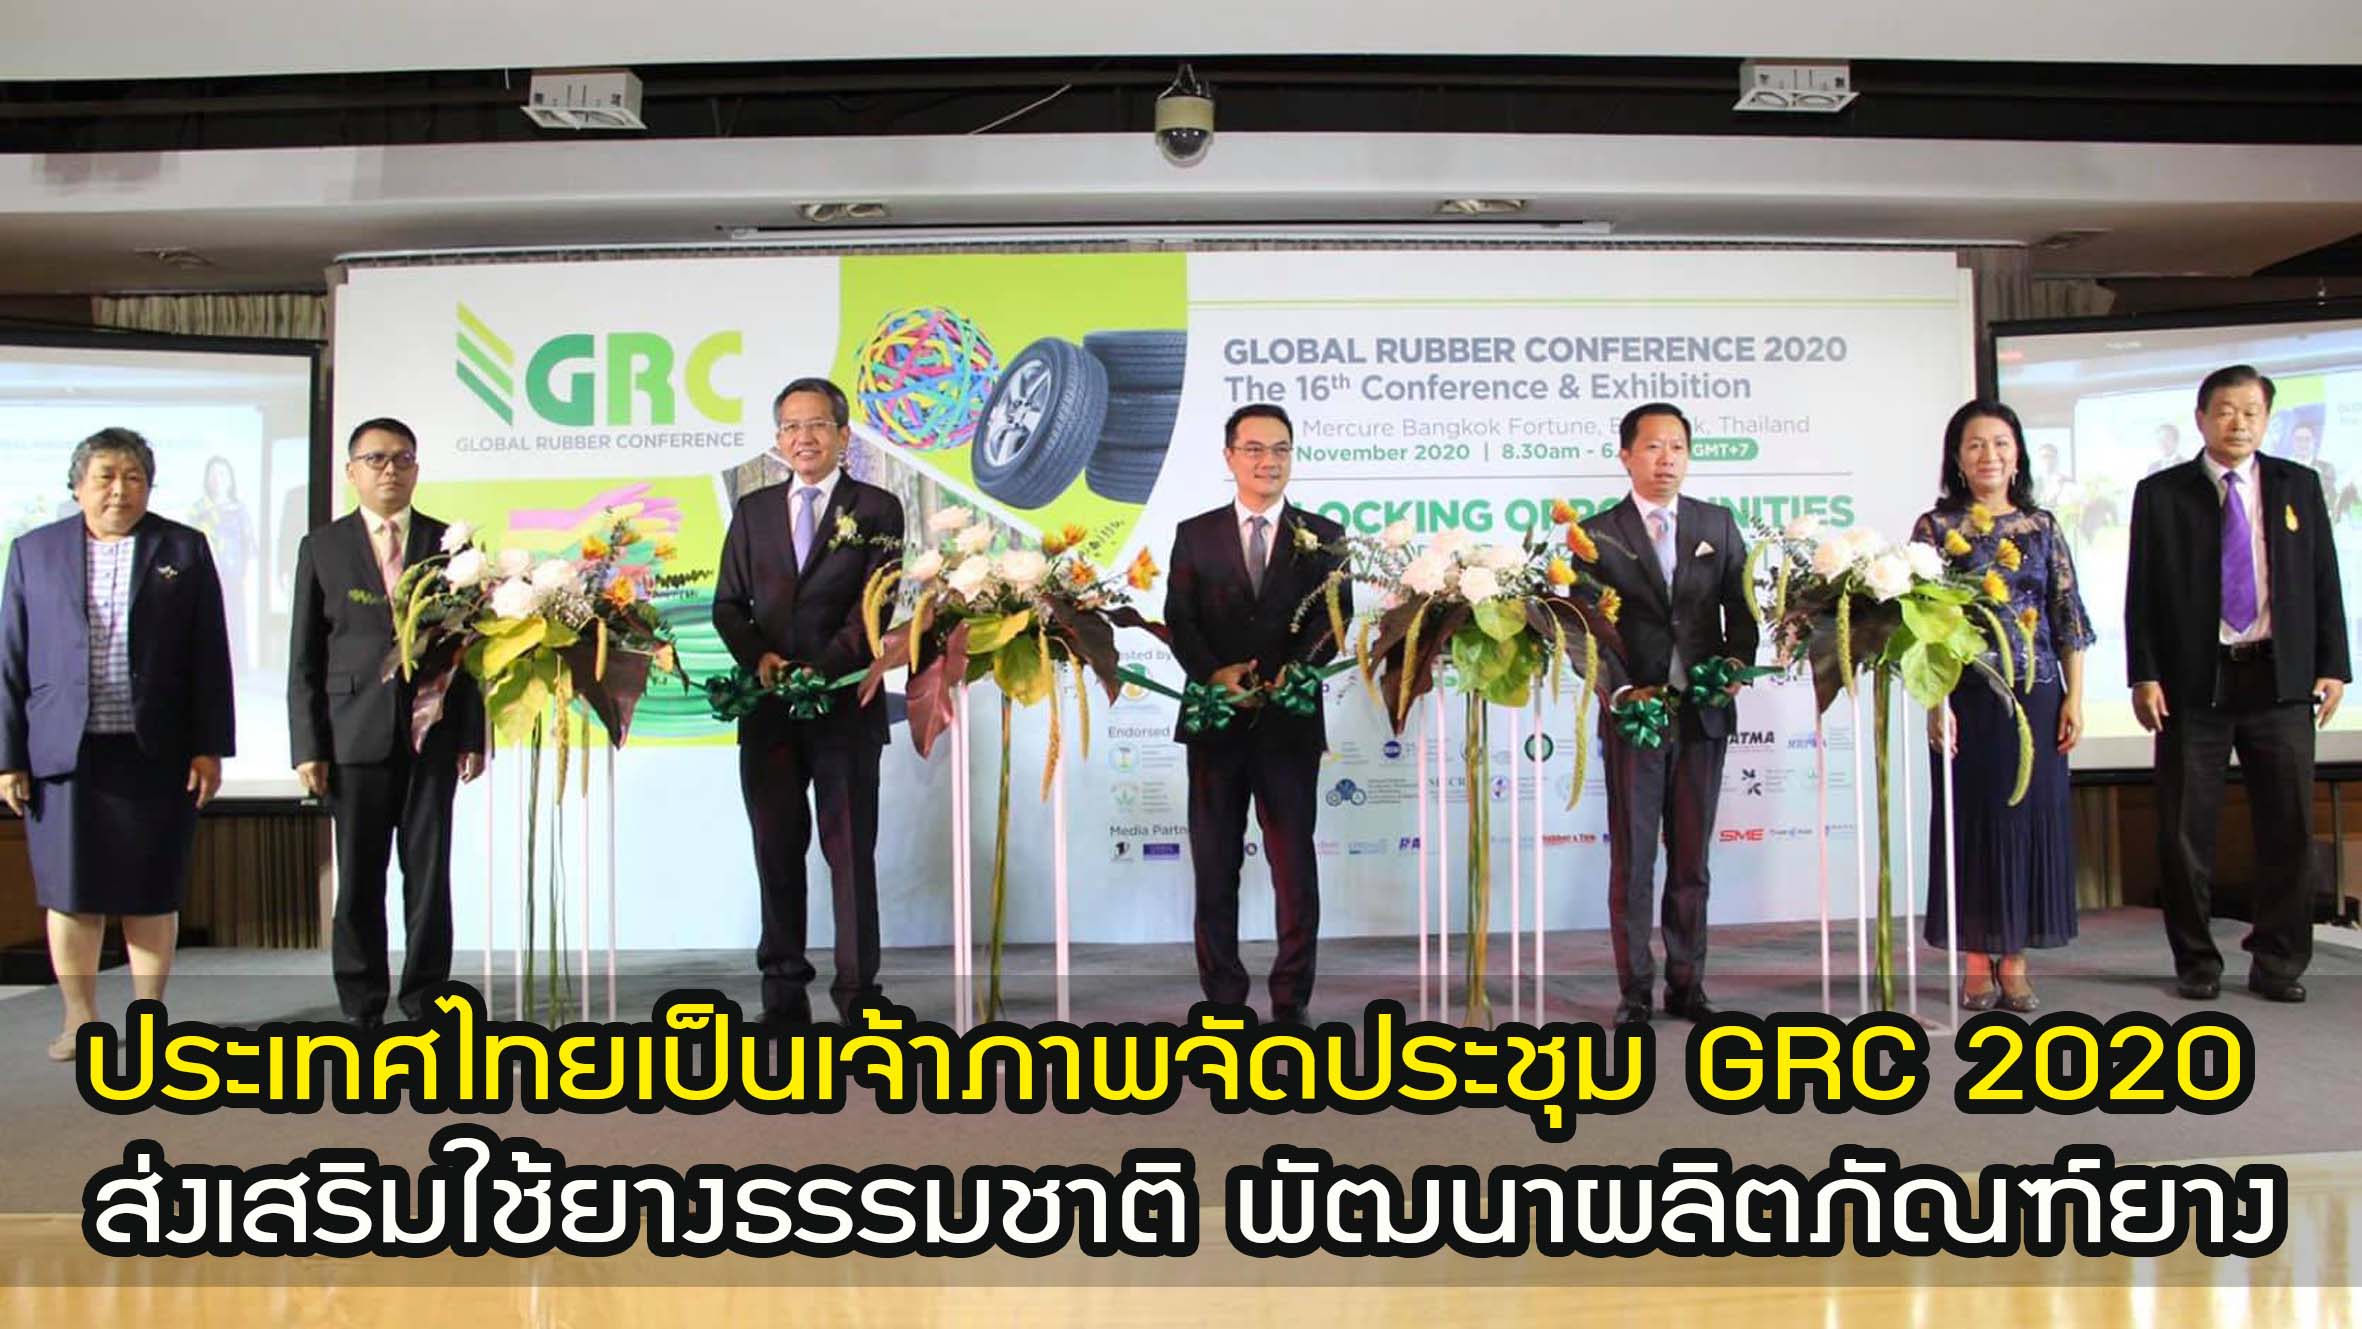 ประเทศไทย เป็นเจ้าภาพจัดประชุม GRC 2020 ร่วมวิเคราะห์แนวโน้ม มุ่งส่งเสริมการใช้ยางธรรมชาติ พัฒนาผลิตภัณฑ์ยาง